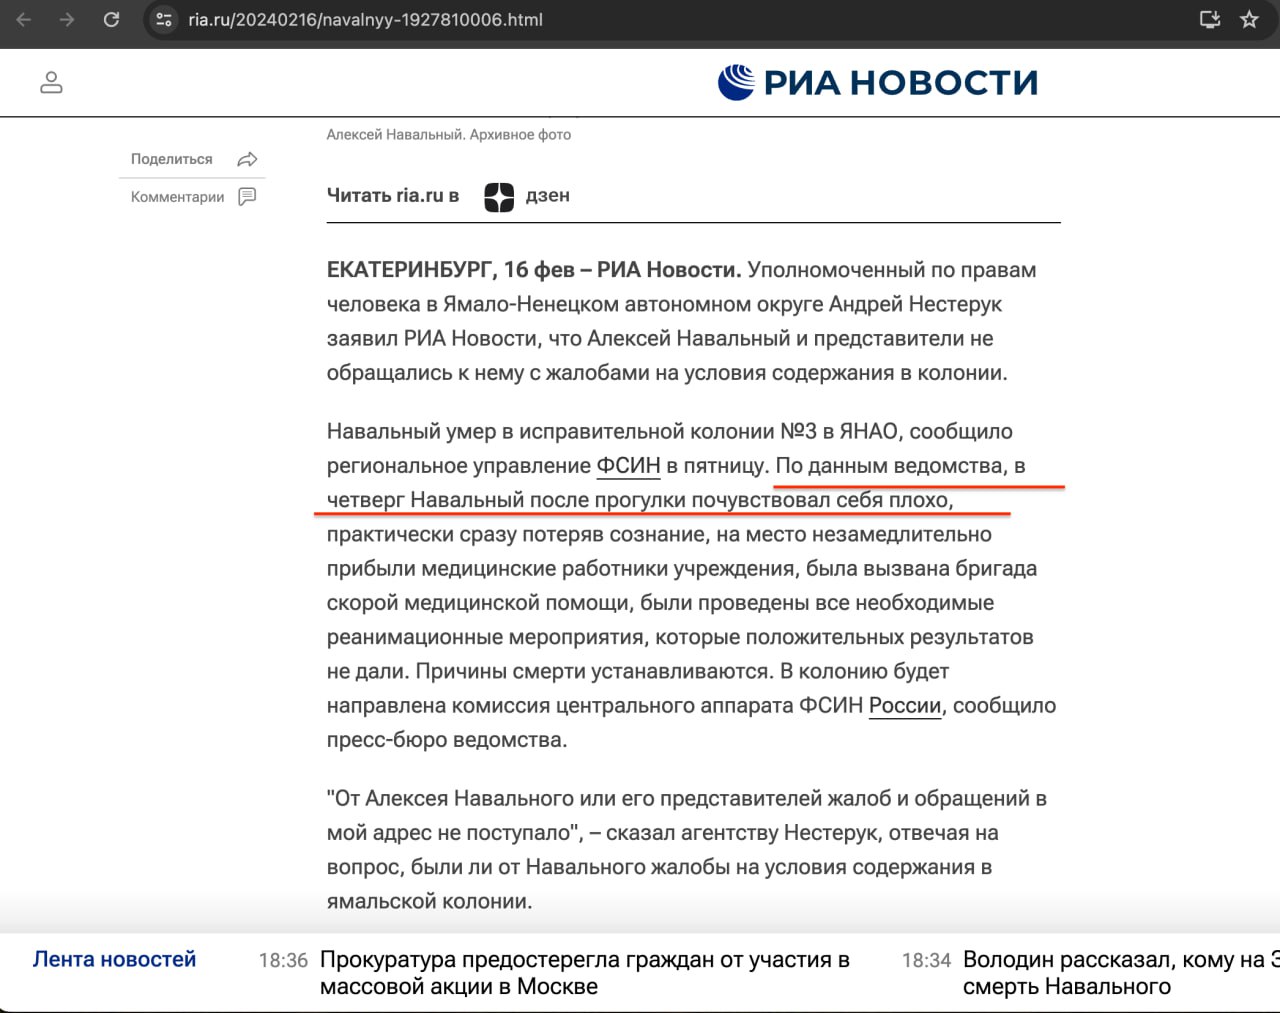 Пропагандистские СМИ сообщили, что Навальный умер вчера, но затем стали исправлять новости — фото